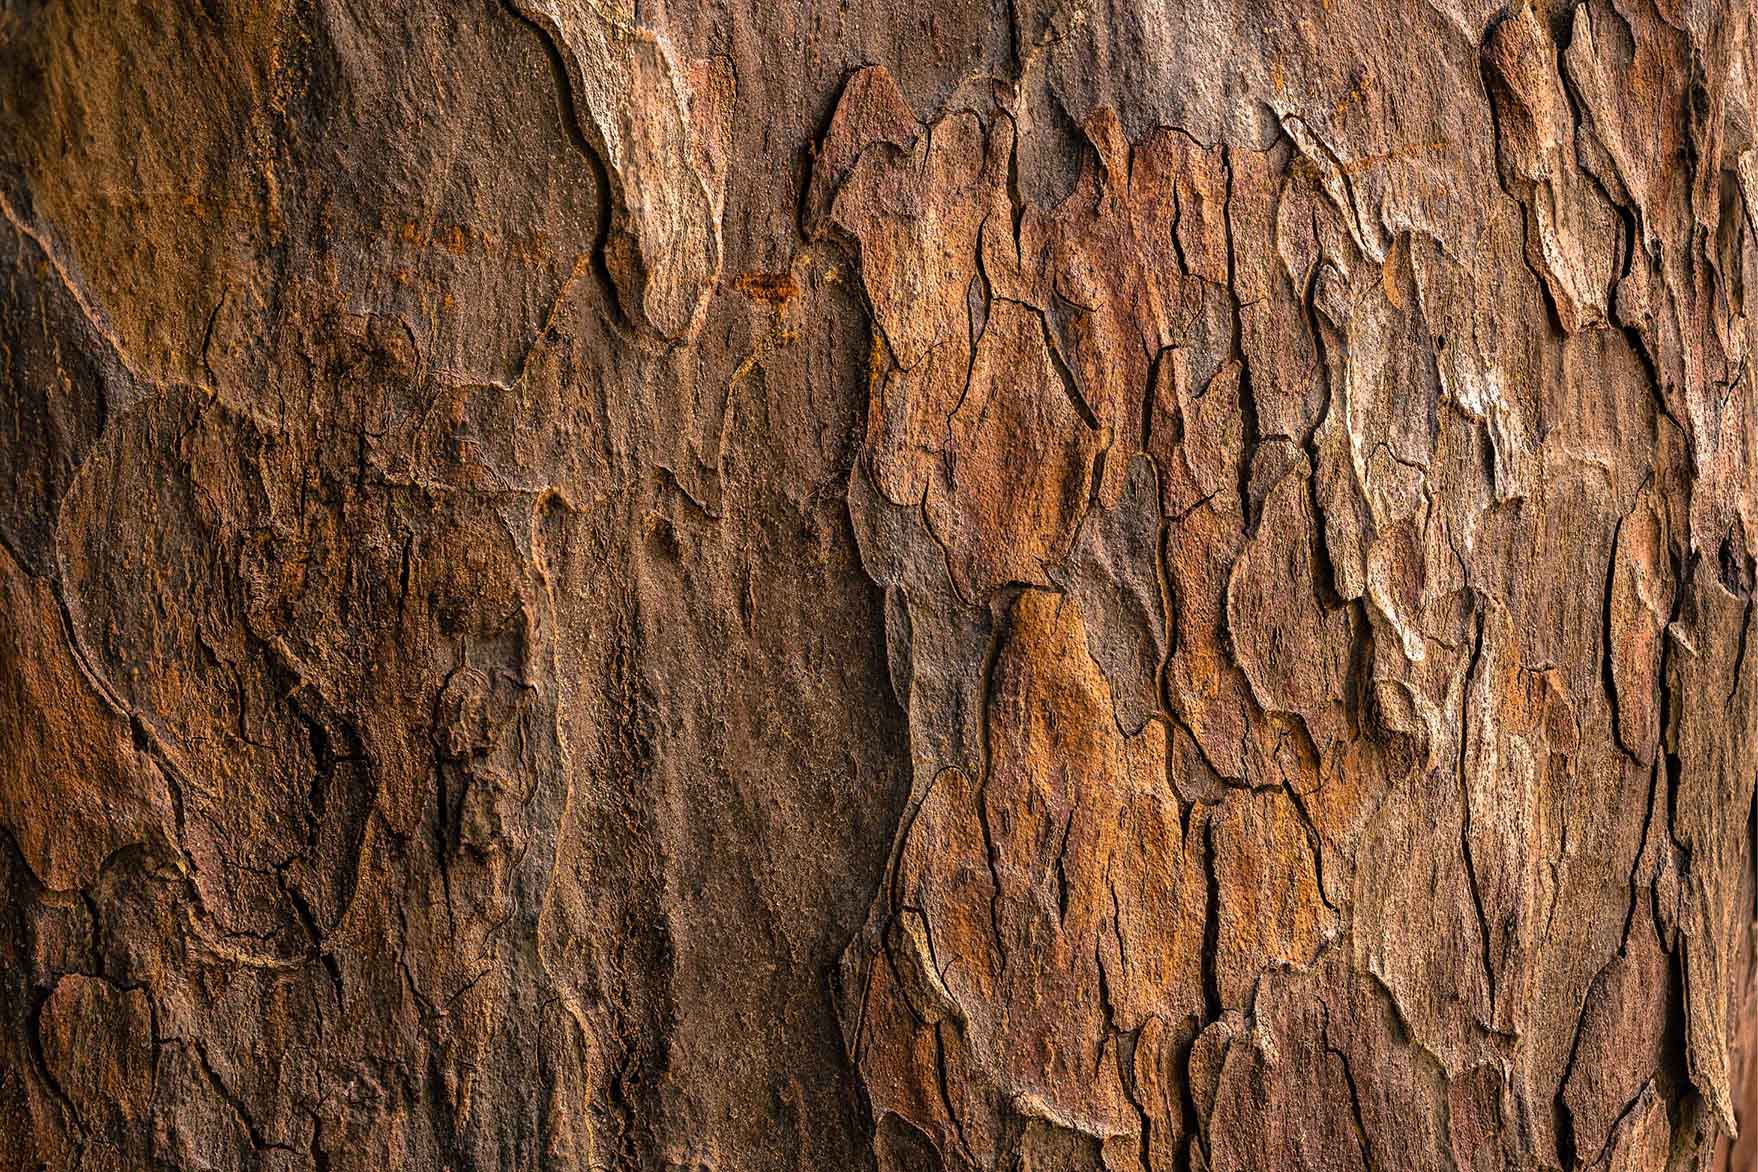 Tree texture